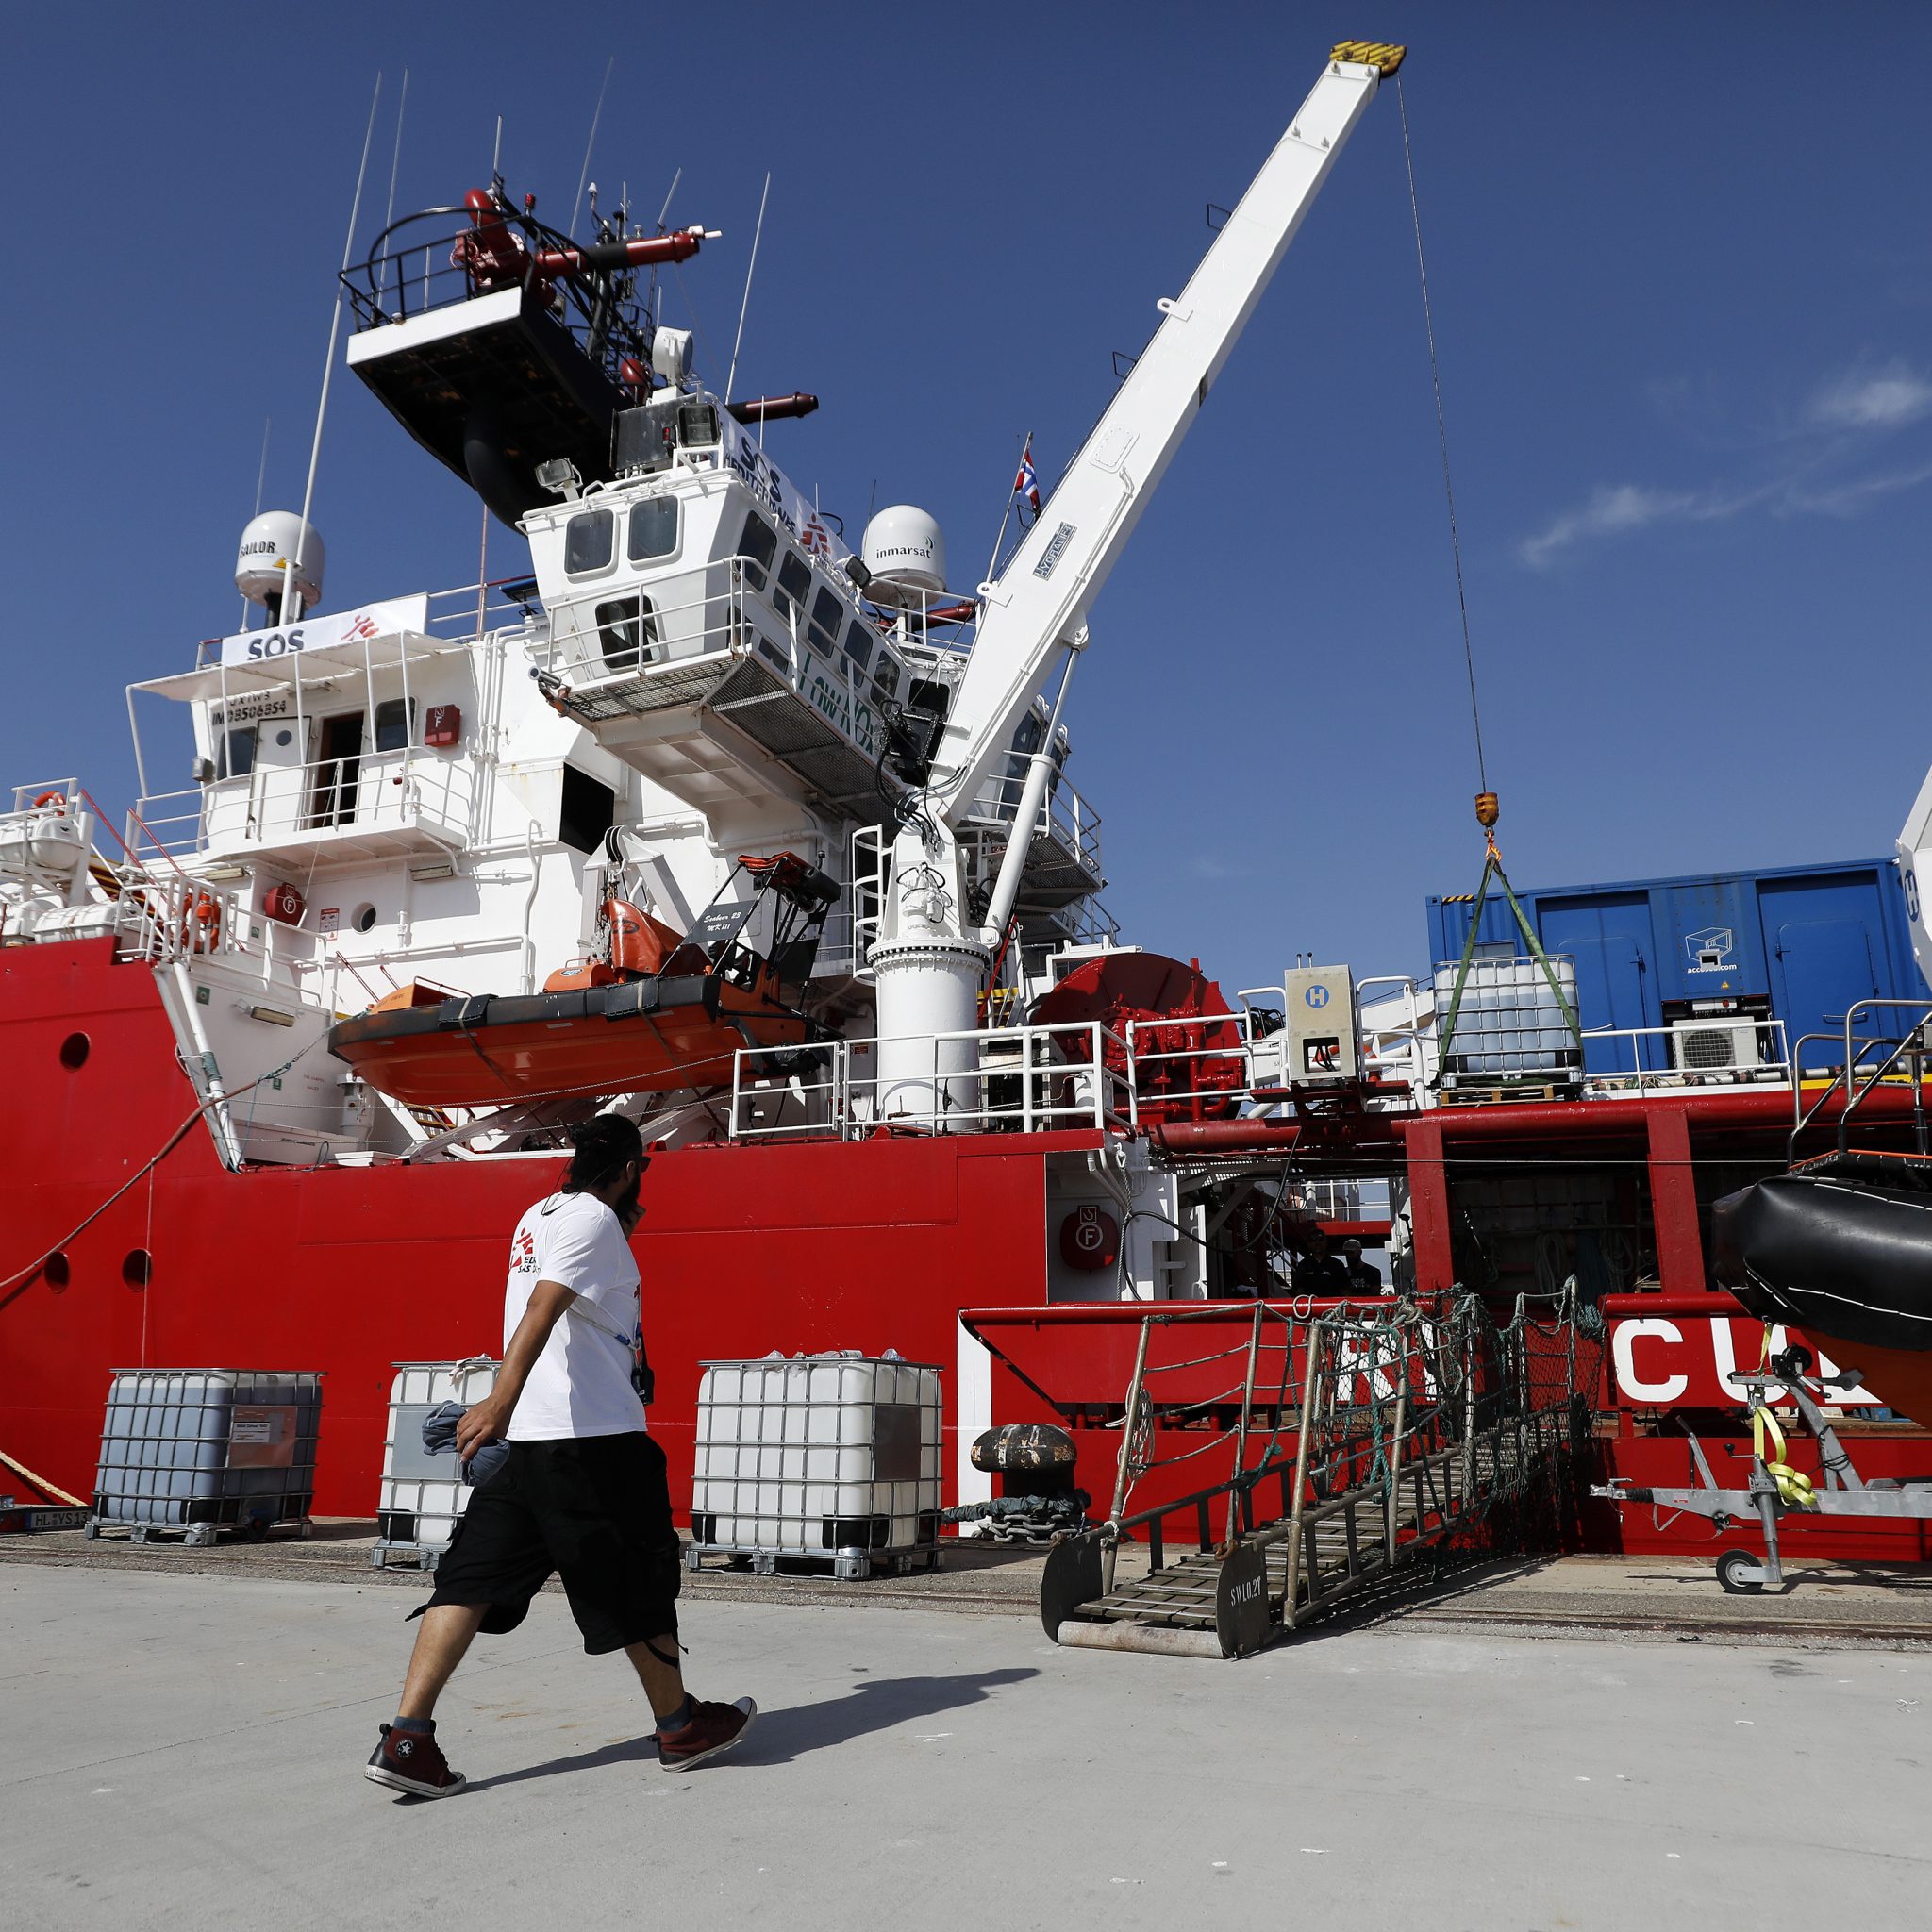 De Ocean Viking van SOS Méditerranée en Artsen zonder Grenzen kort voor vertrek uit Marseille. (Foto EPA / Sebatien Nogier)